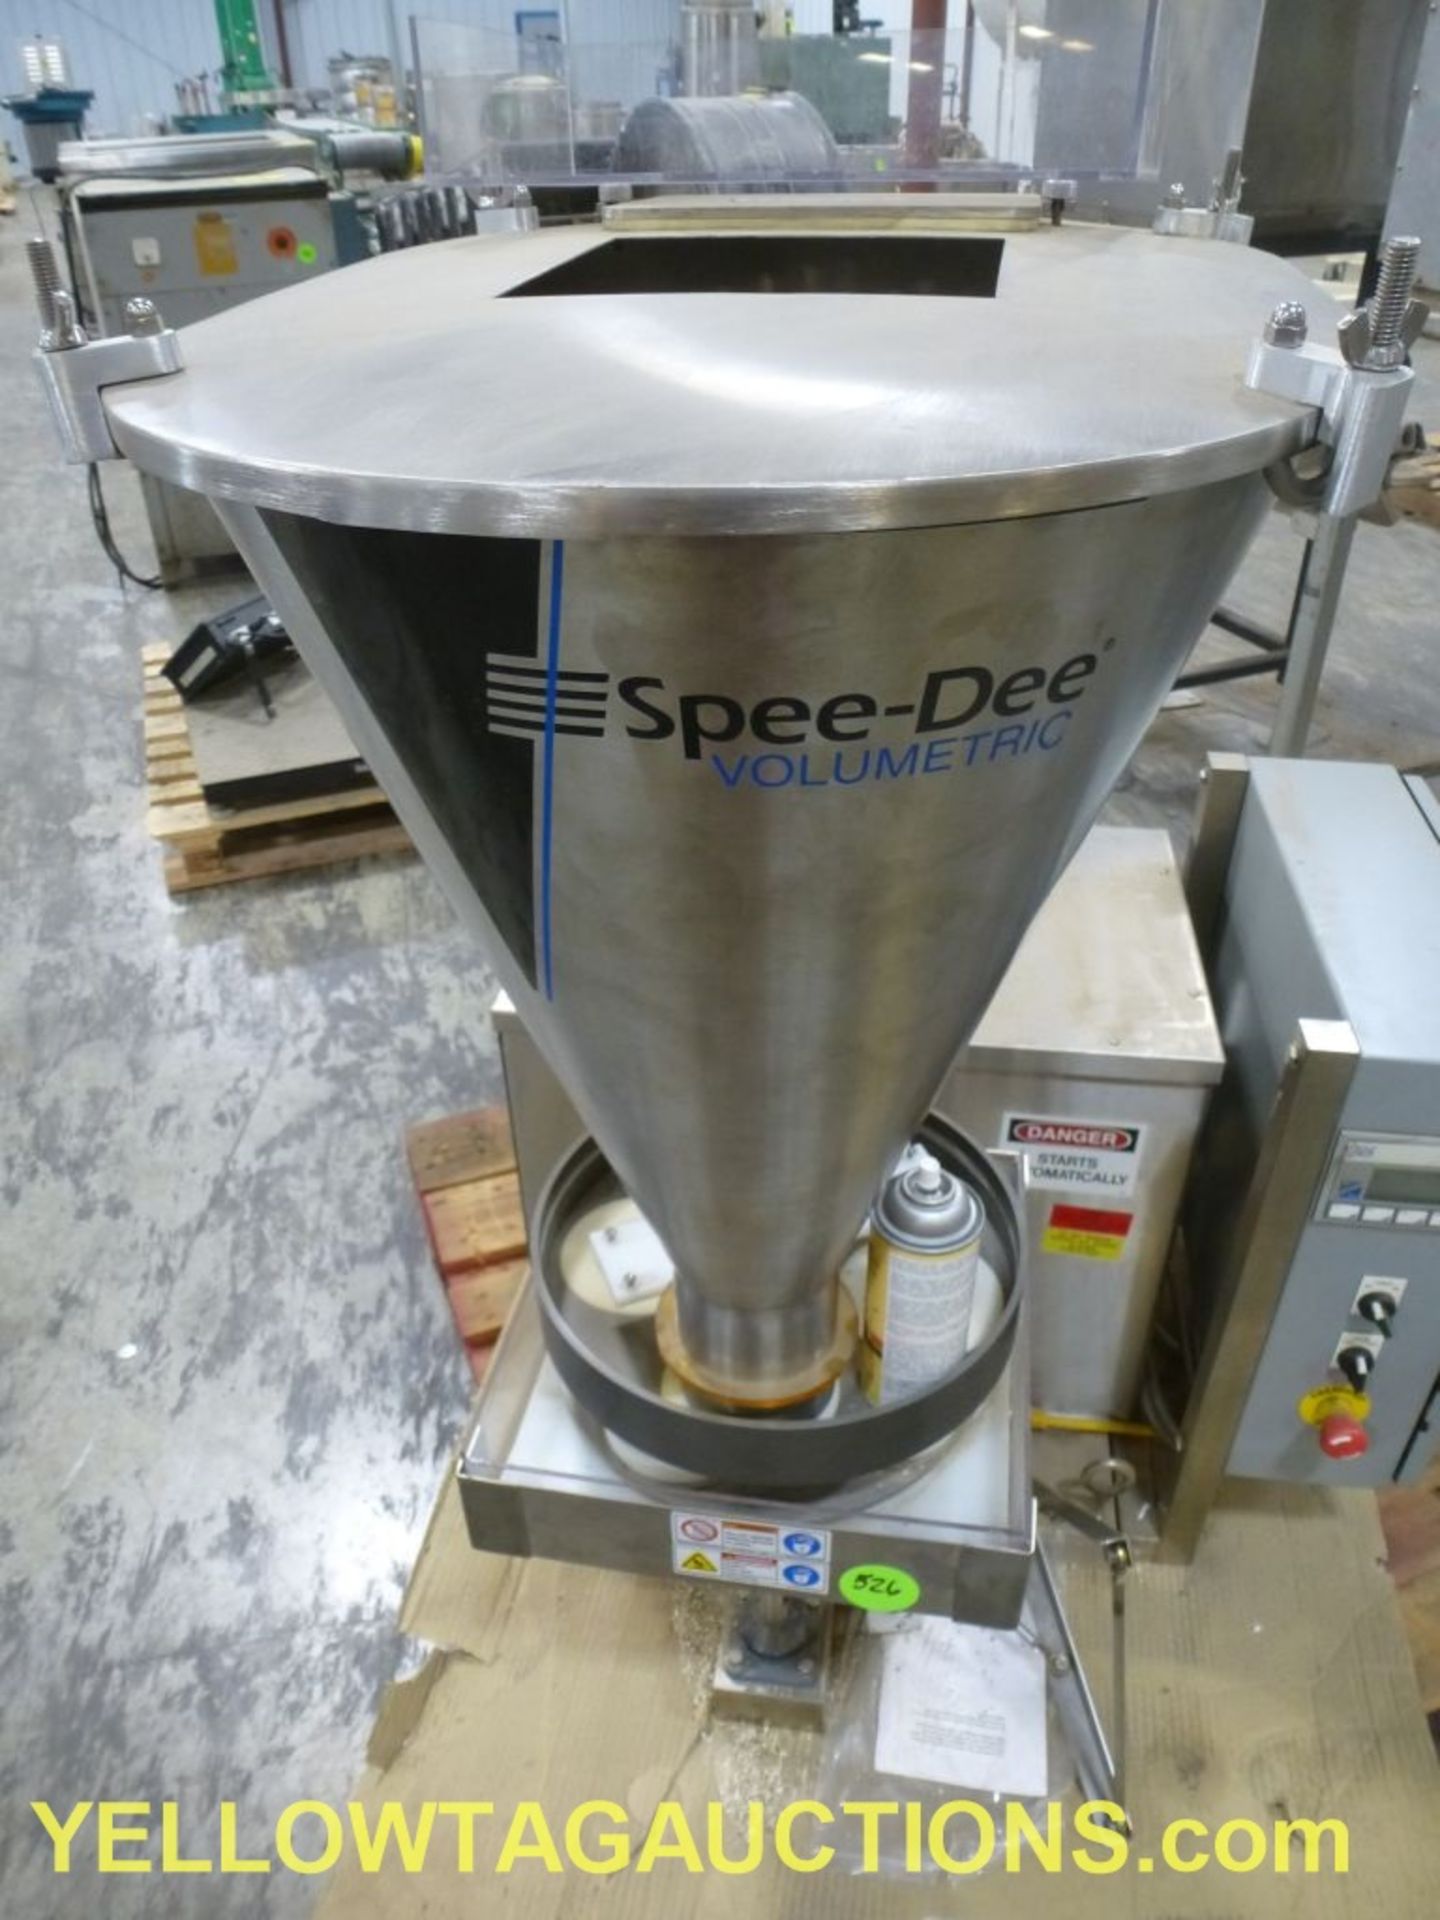 Spee-Dee Digital Cup Filler|Model No. CME; 240V|Lot Loading Fee: $5.00 - Image 3 of 11